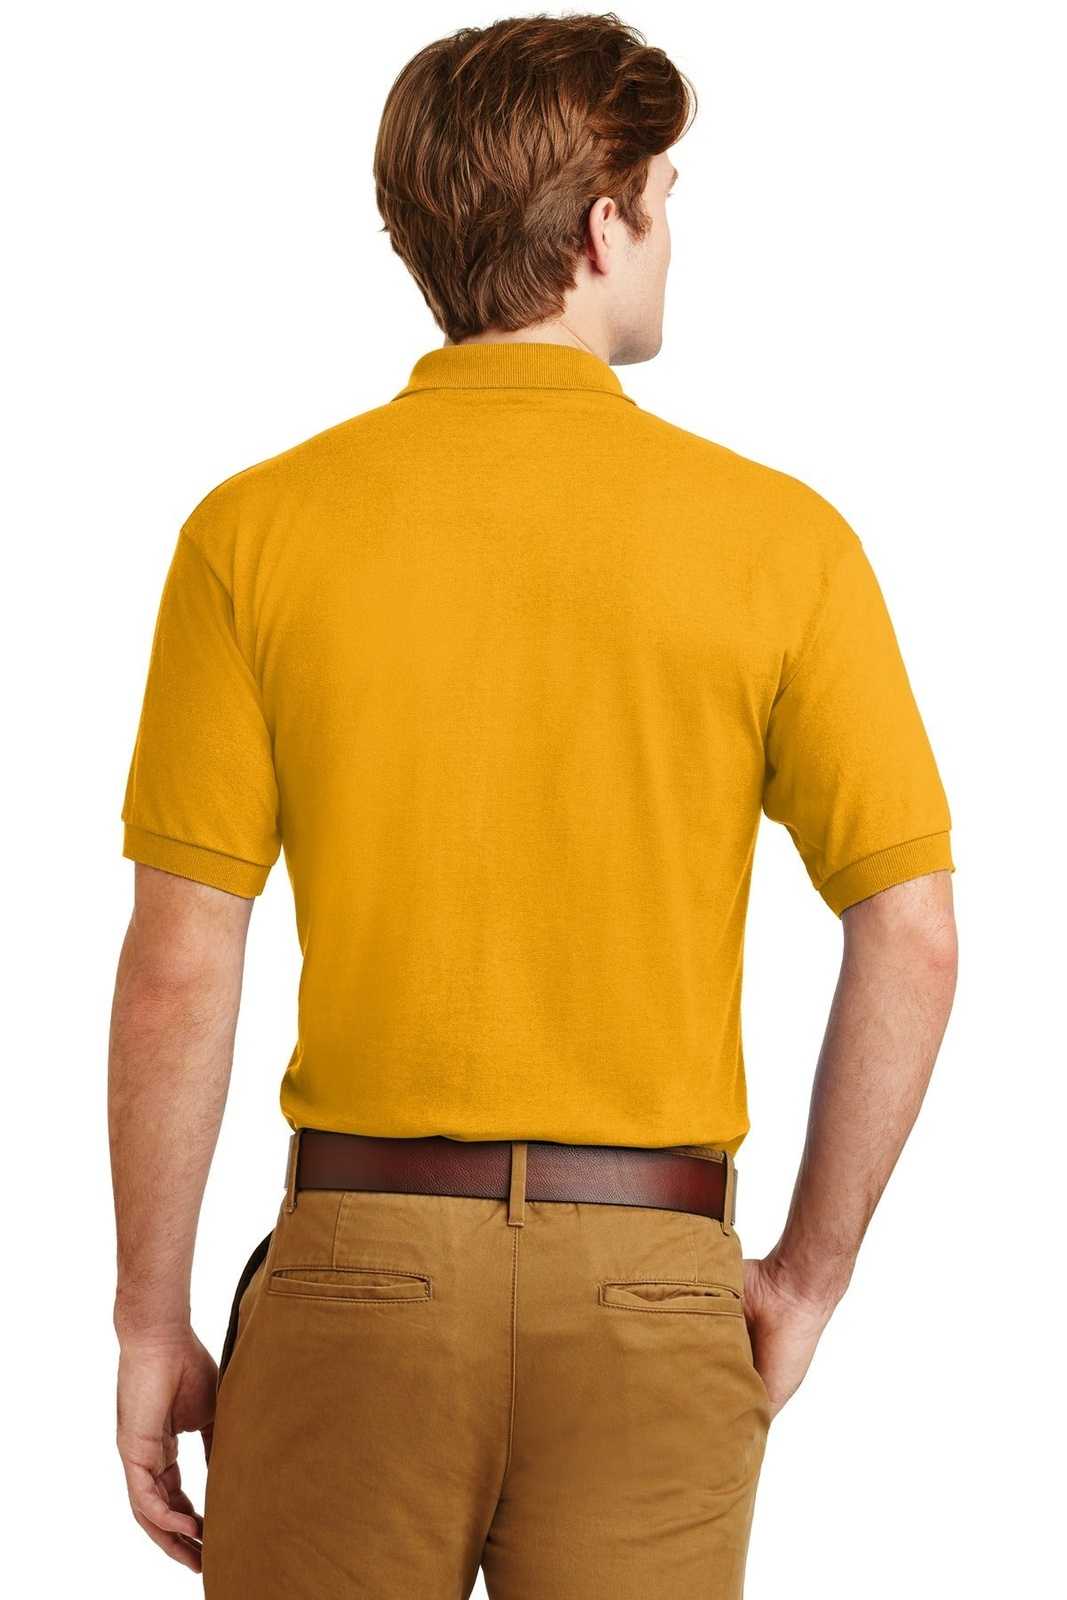 Gildan 8800 Dryblend 6-Ounce Jersey Knit Sport Shirt - Gold - HIT a Double